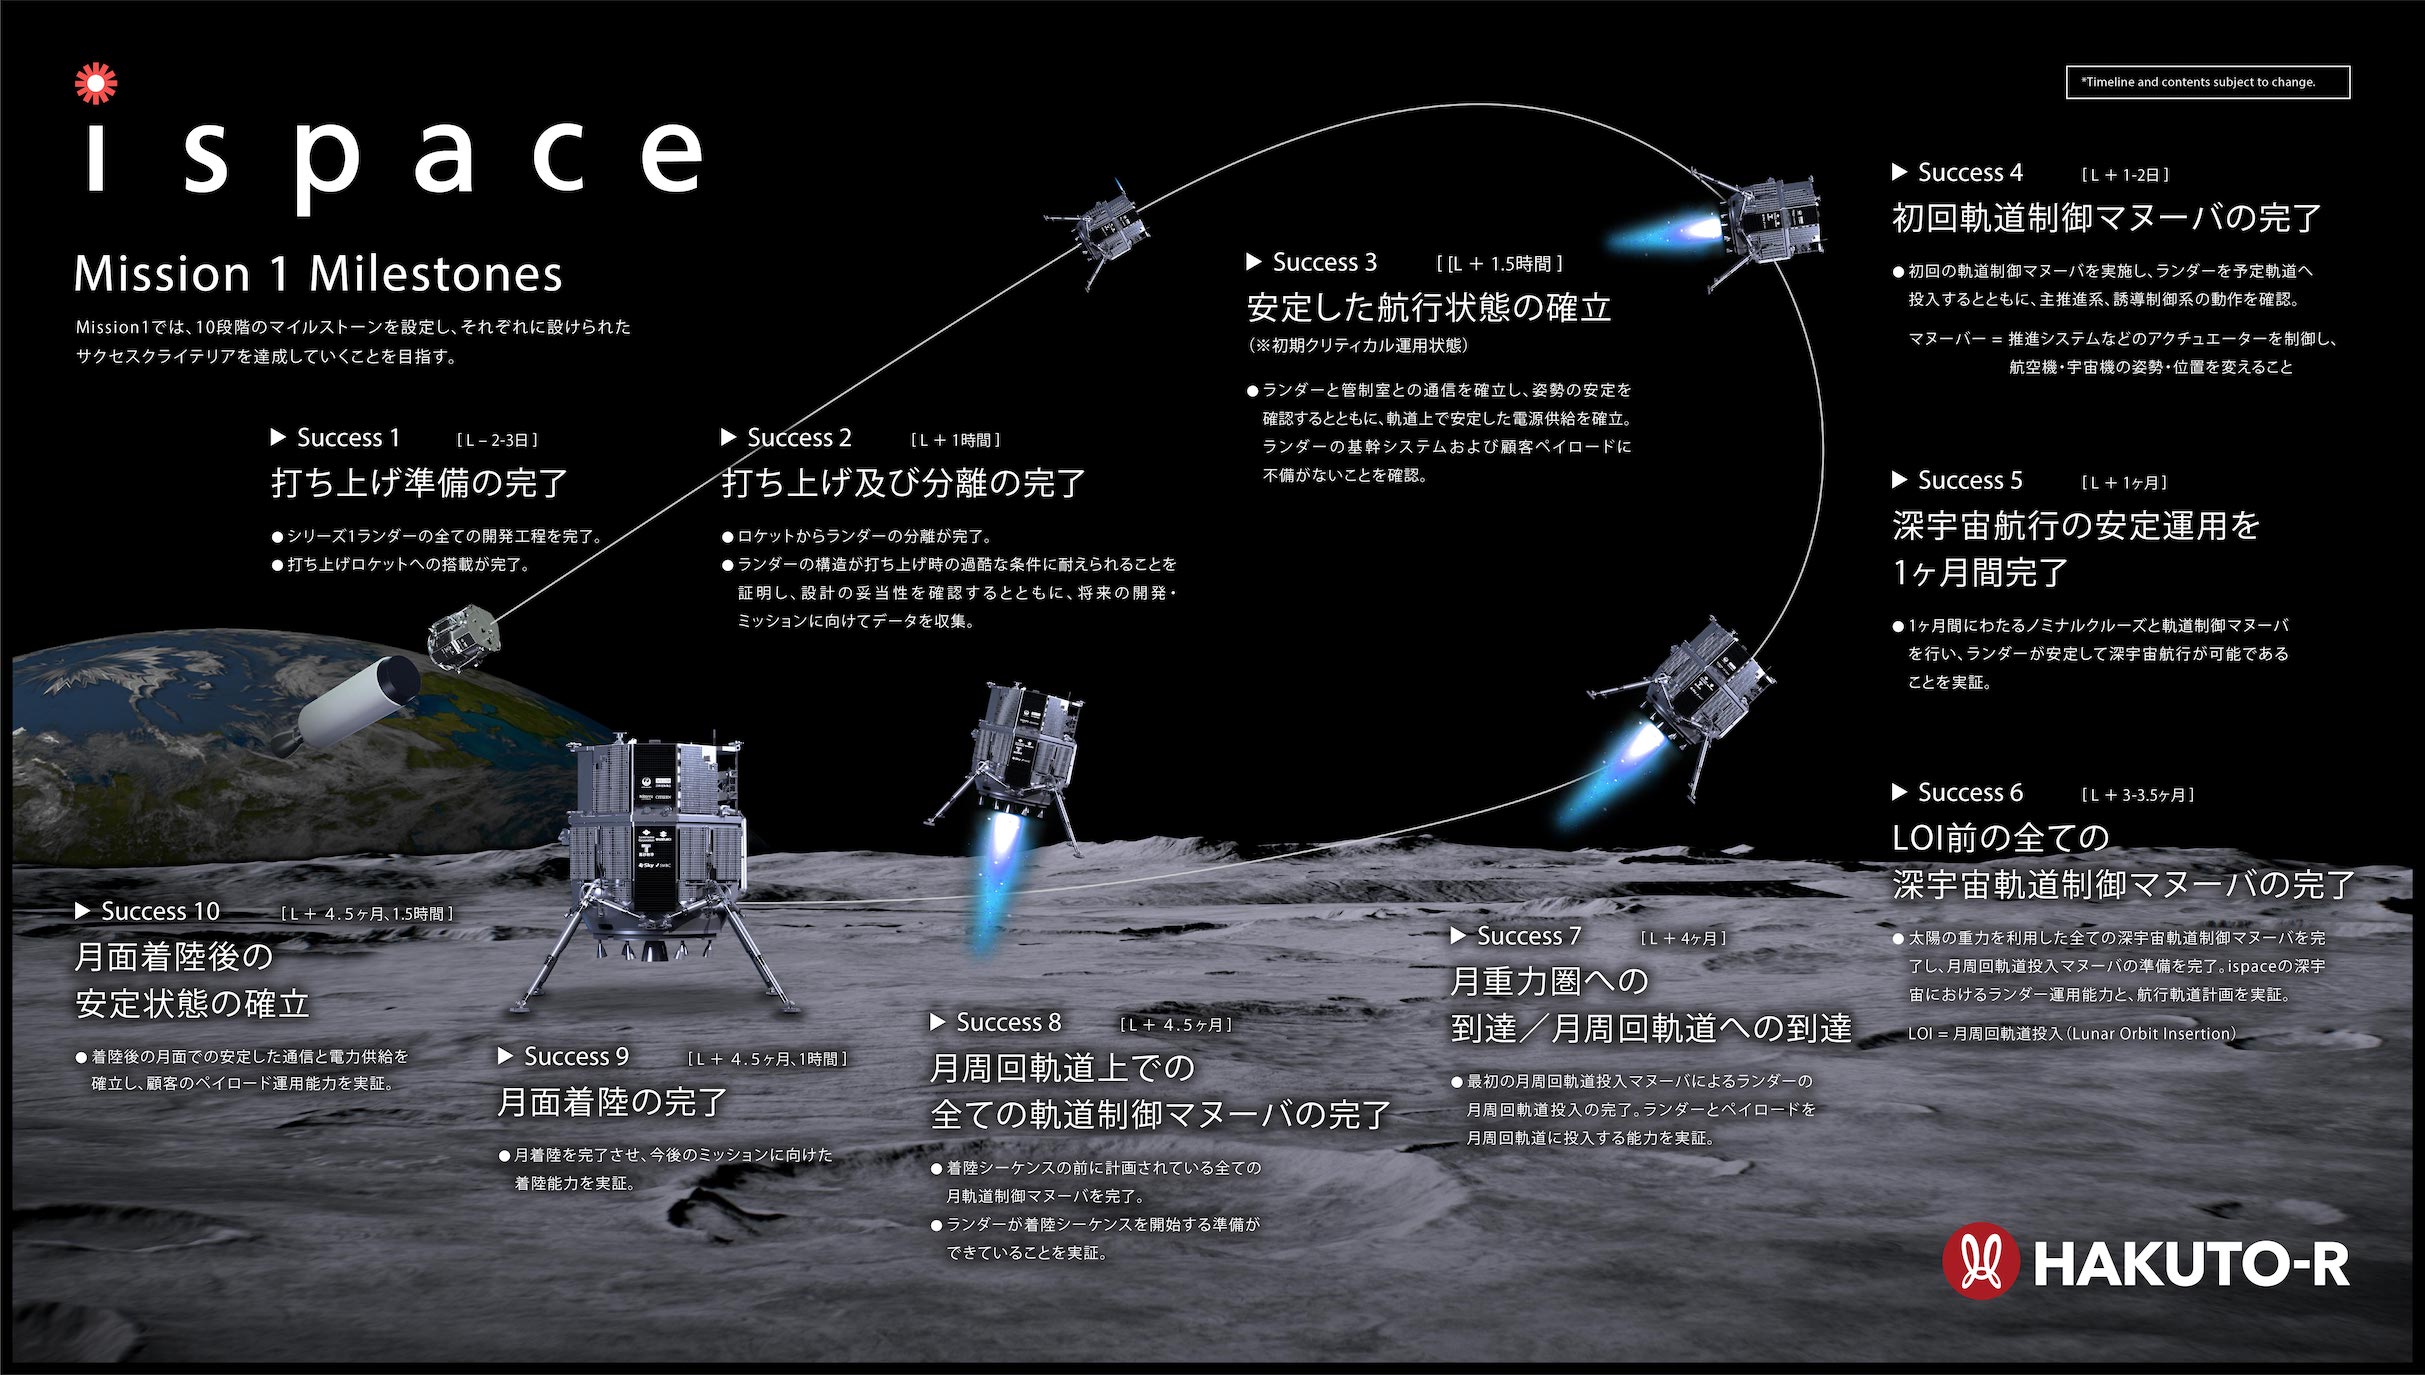 ispaceの「HAKUTO-R」、サクセス8まで成功も着陸は確認できず